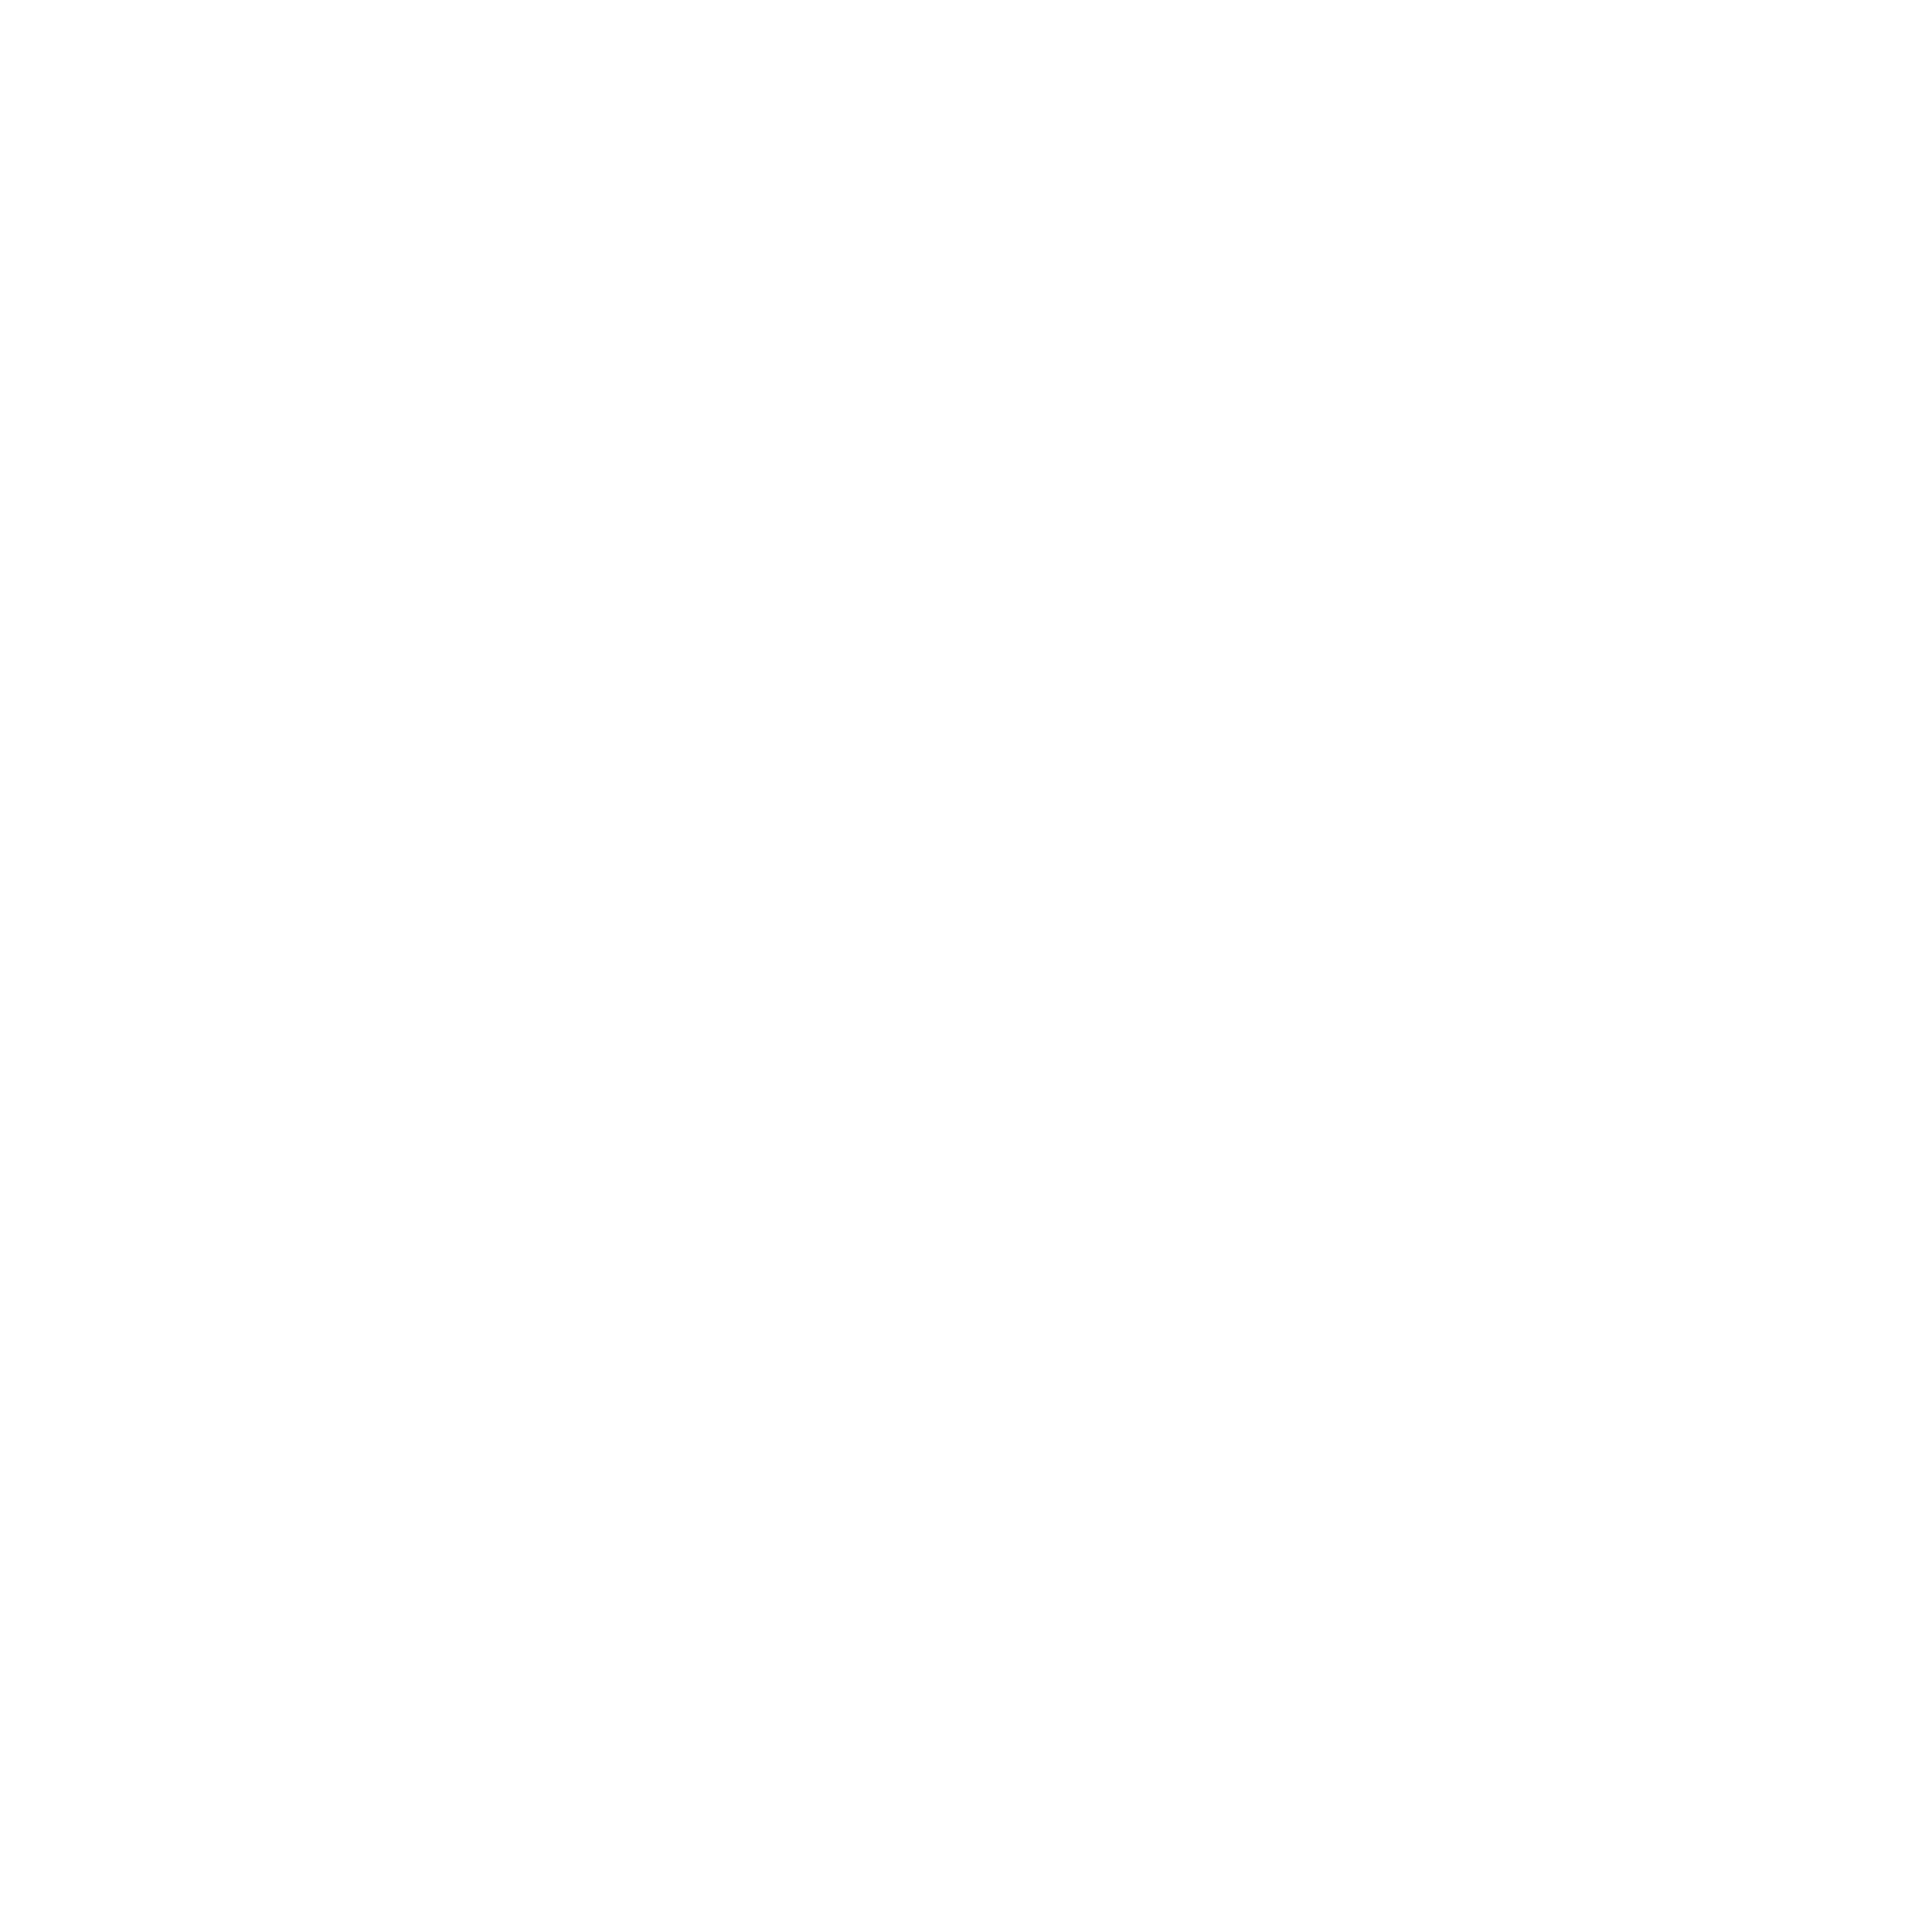 Global Bar Beverages